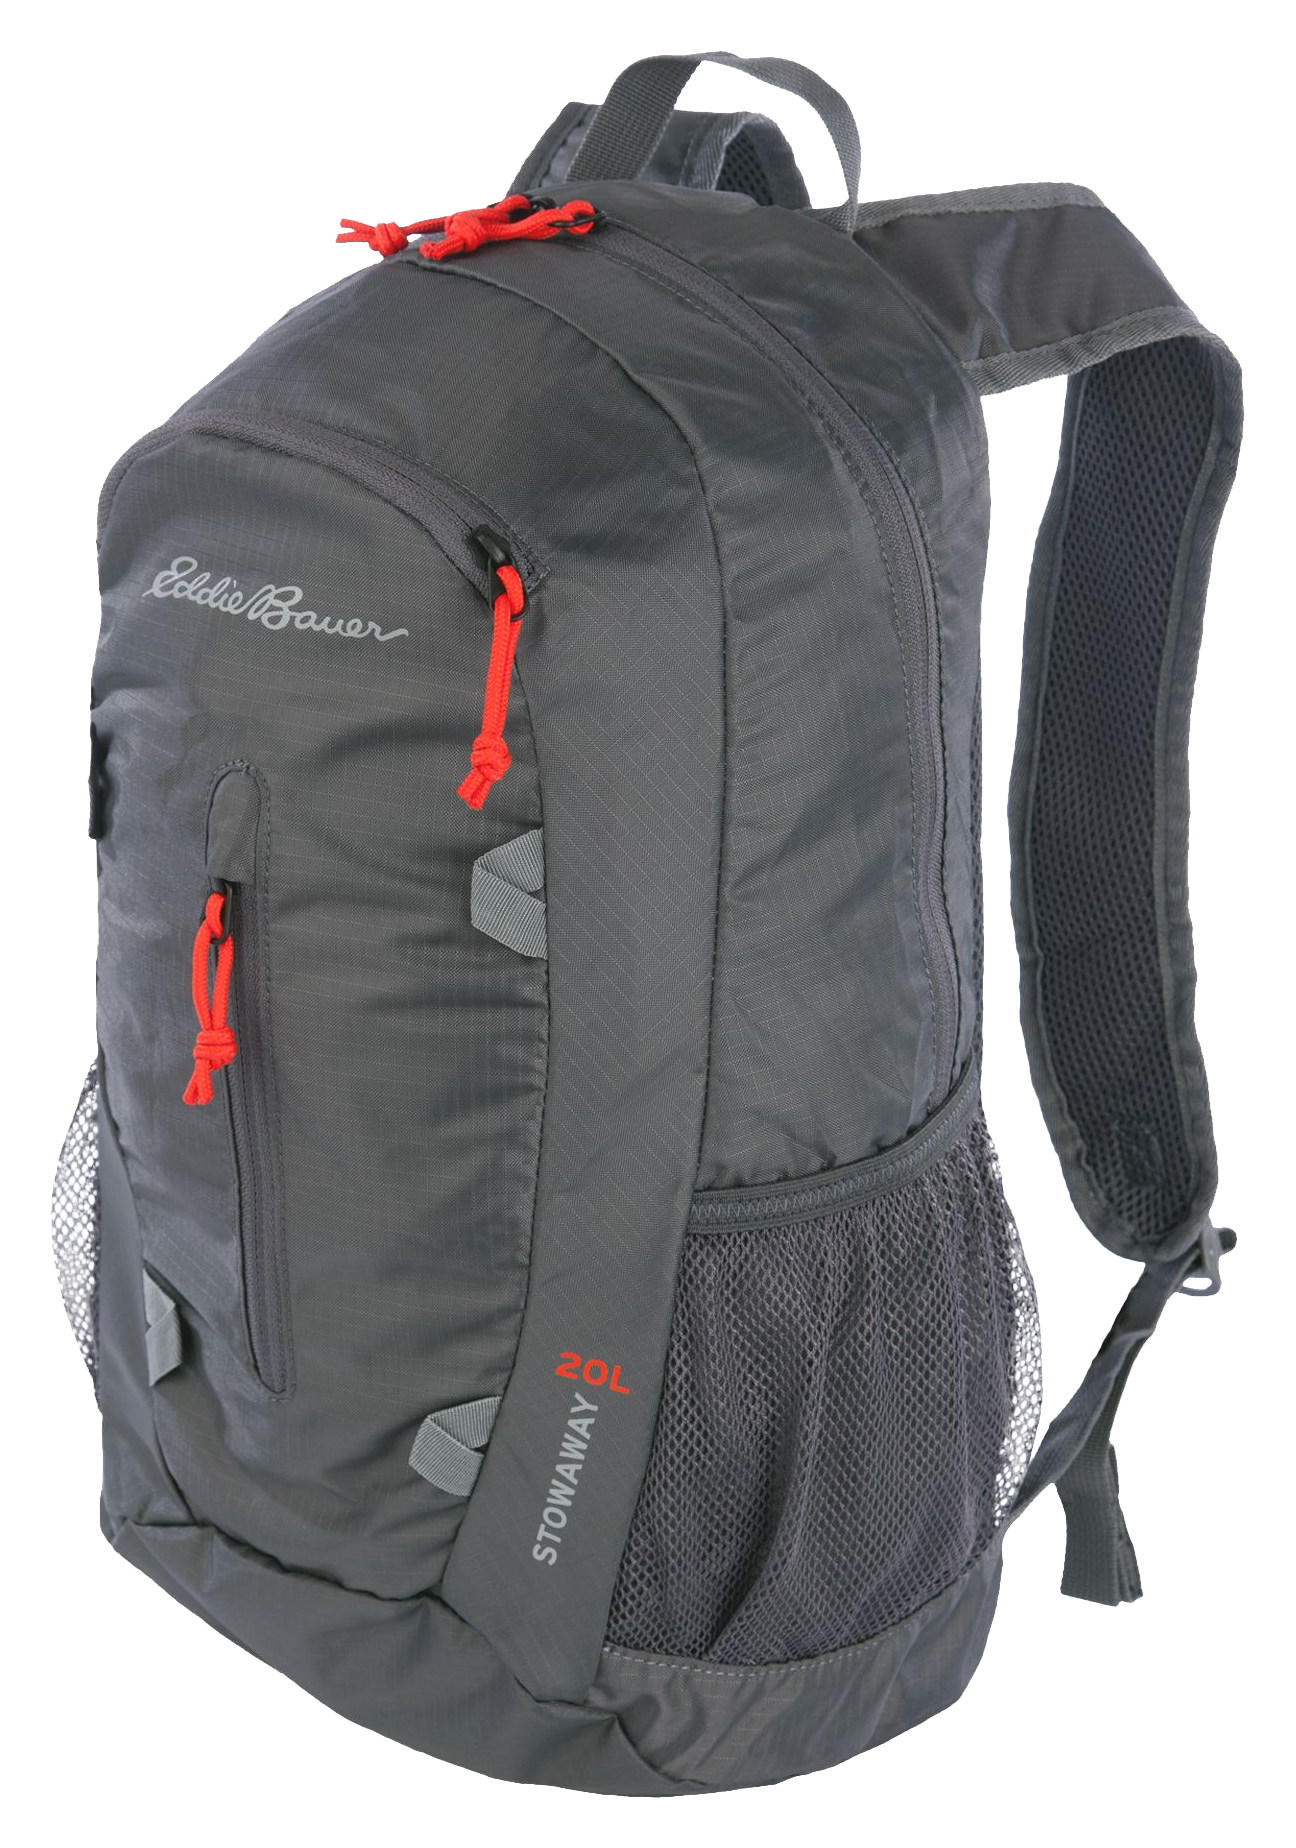 Eddie Bauer Stowaway Packable 20L Backpack - Dark Smoke